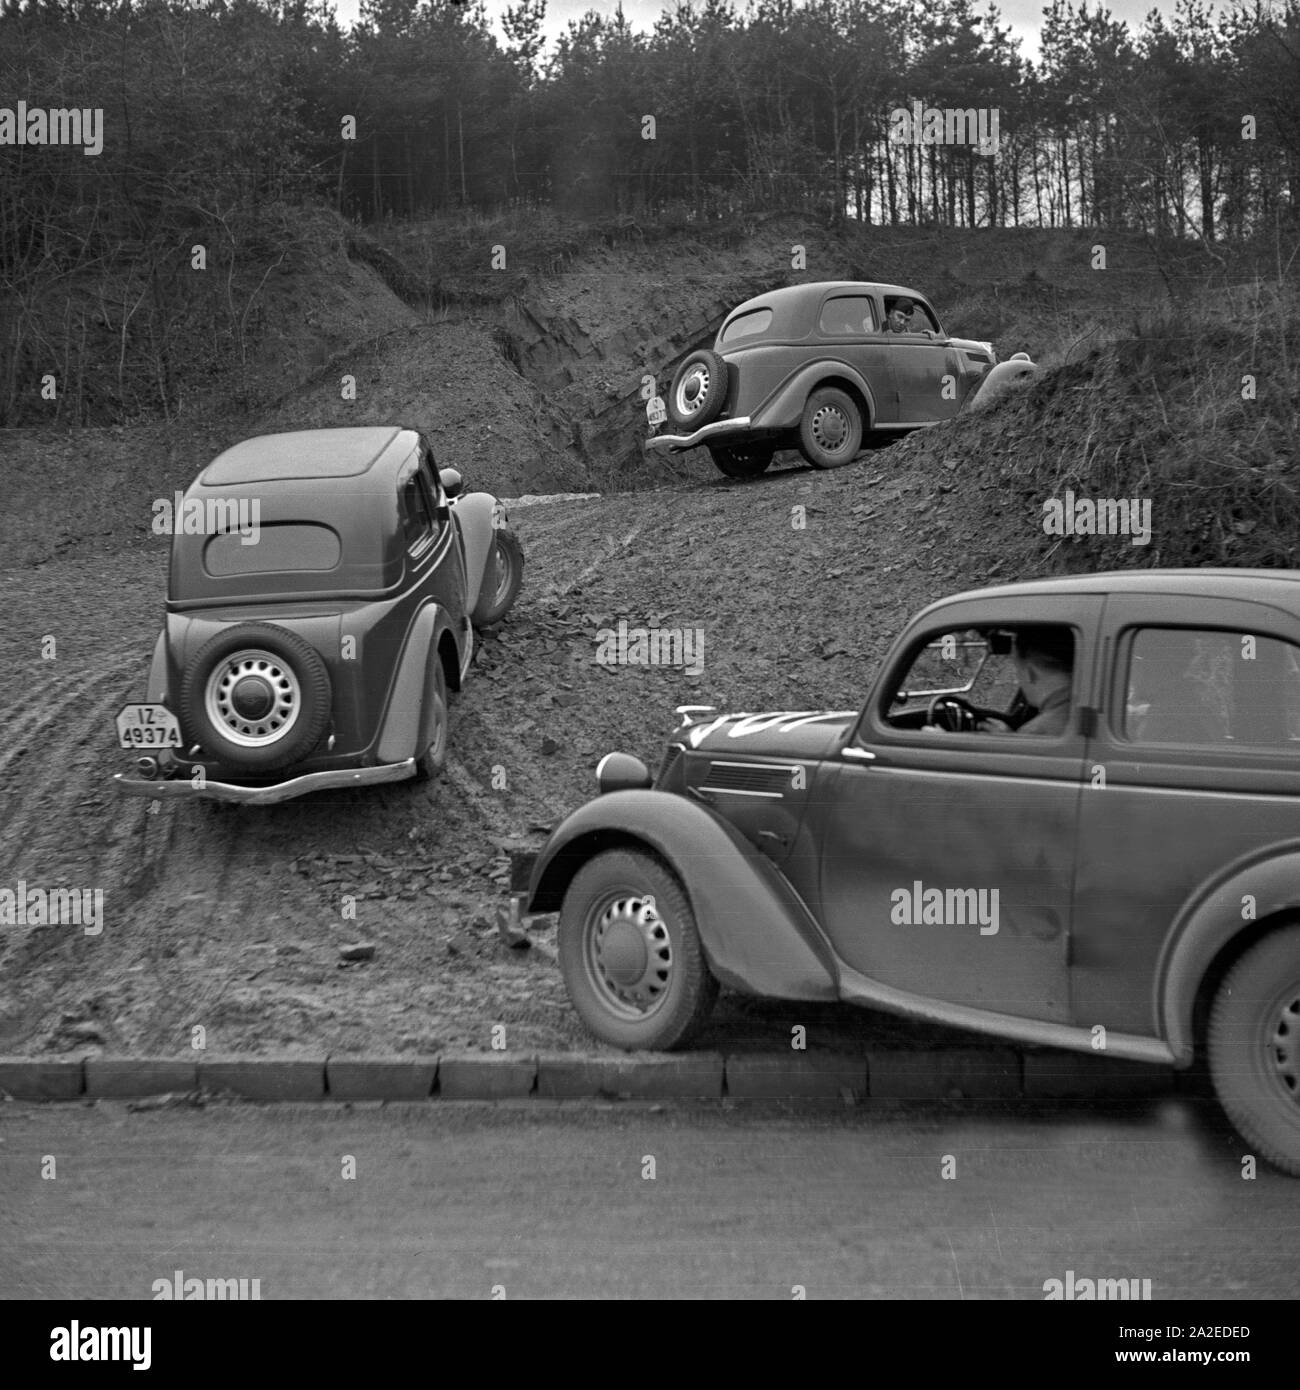 Die Anforderungen an Mensch und Maschine steigen bei der Geländefahrt mit dem Ford Eifel, Deutschland 1930er Jahre. Offroad with Ford model Eifel, Germany 1930s. Stock Photo